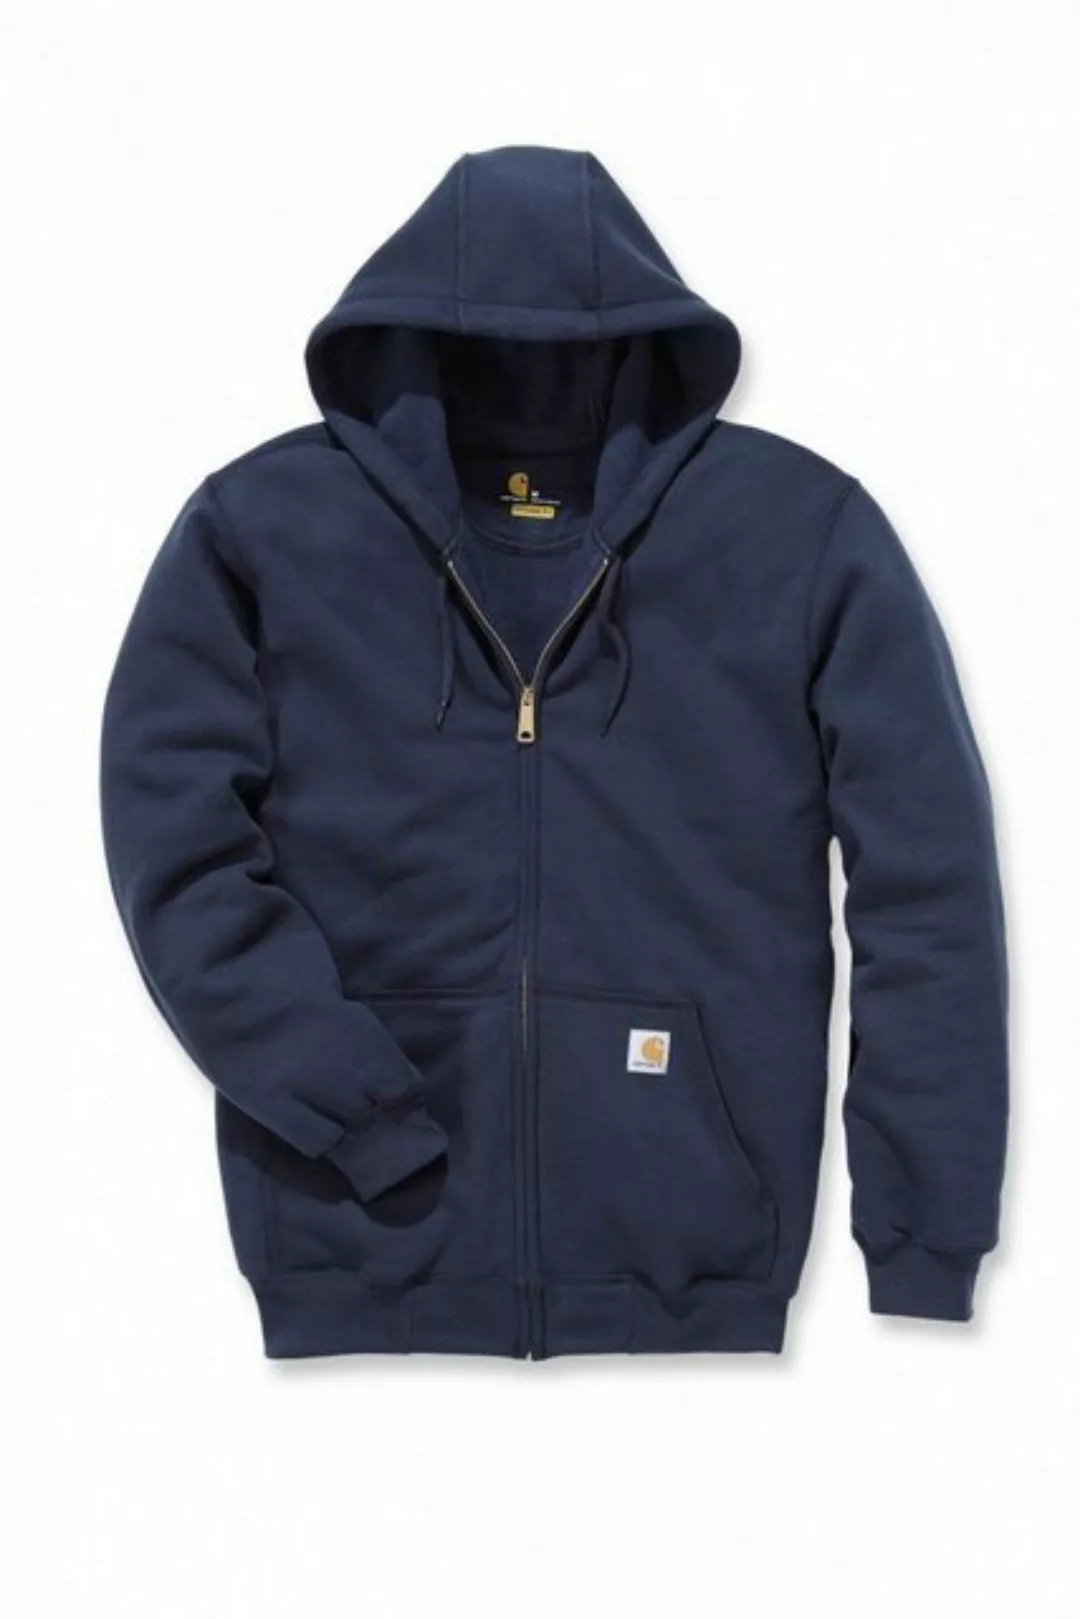 Carhartt Sweater Carhartt Herren Zip Hoodie Midweight Hooded Zip Front Swea günstig online kaufen